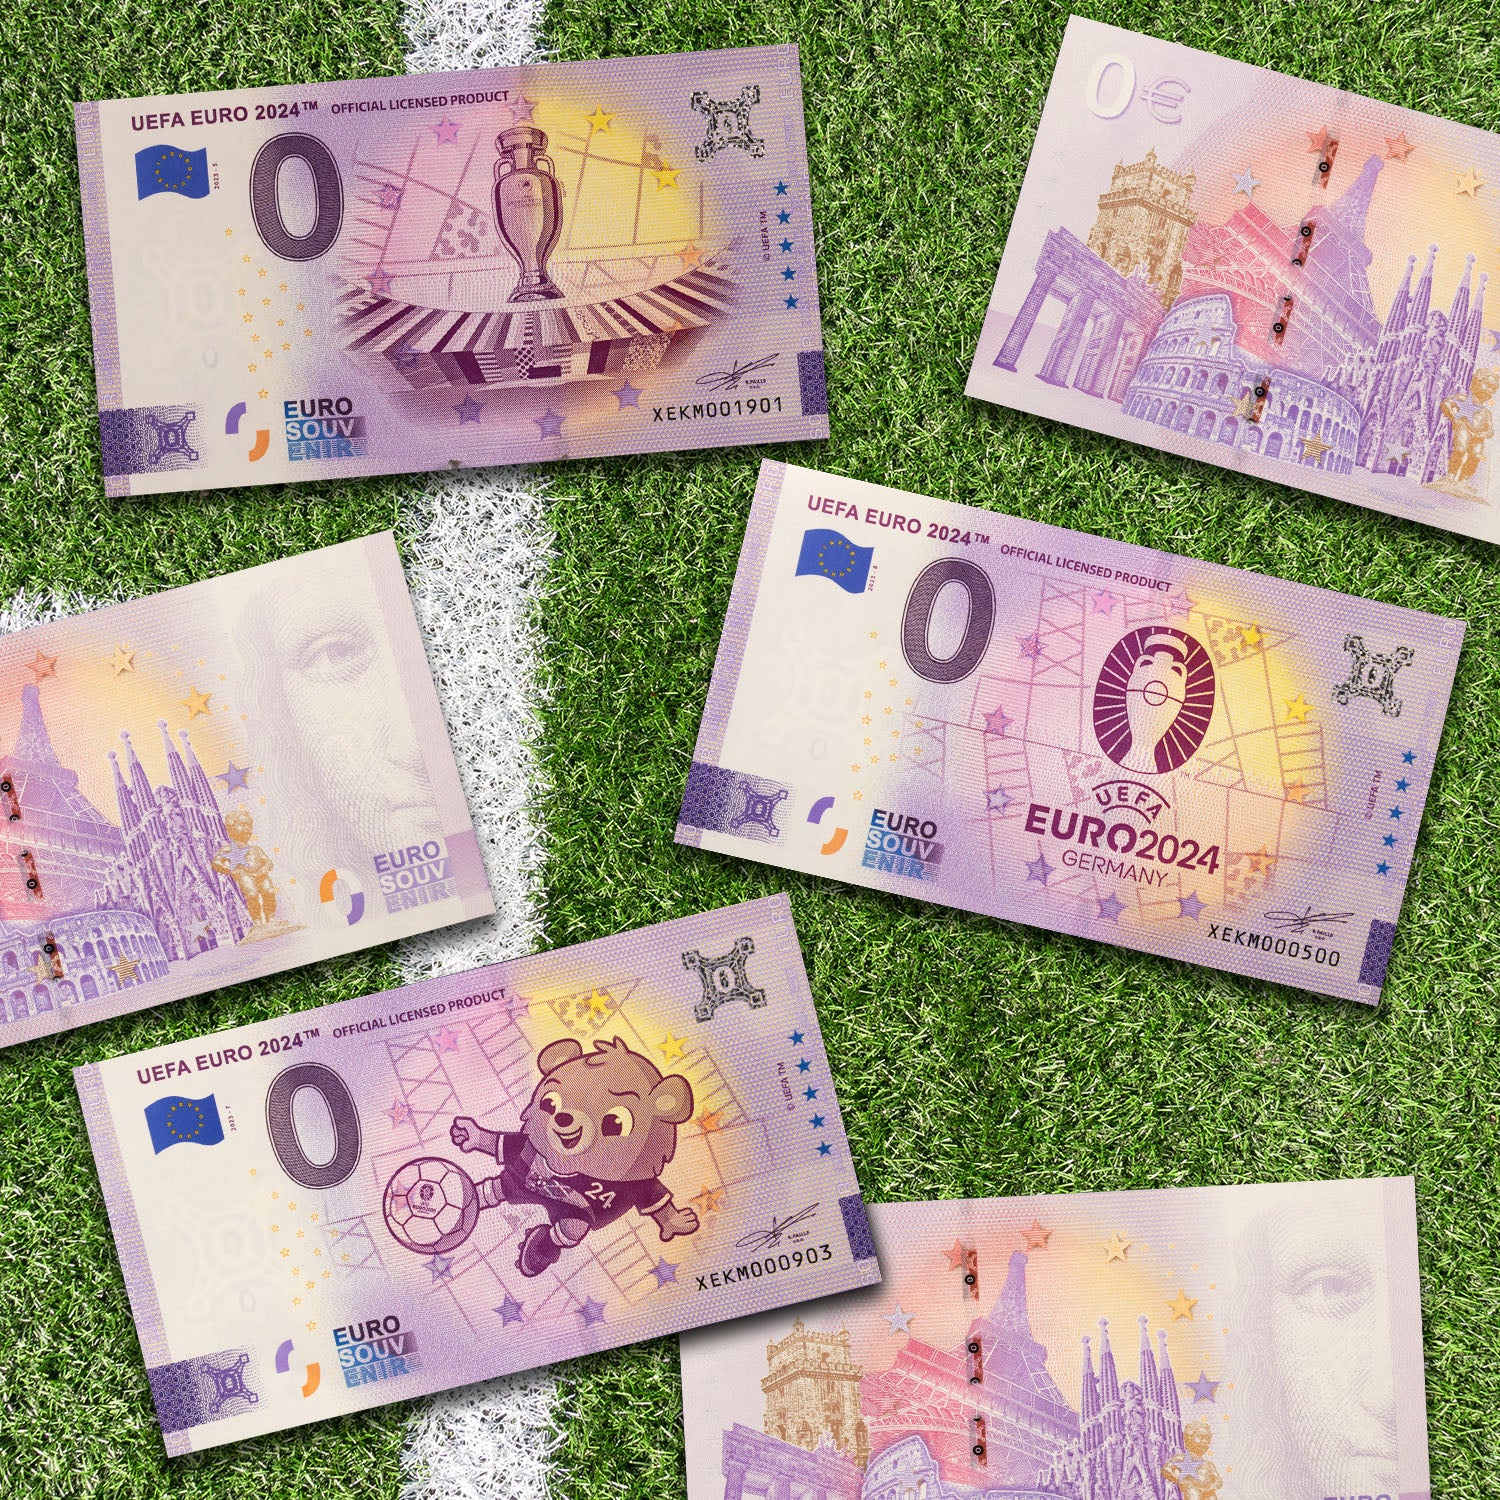 Billet de banque officiel de 0 € de l'UEFA EURO 2024 dans un portefeuille